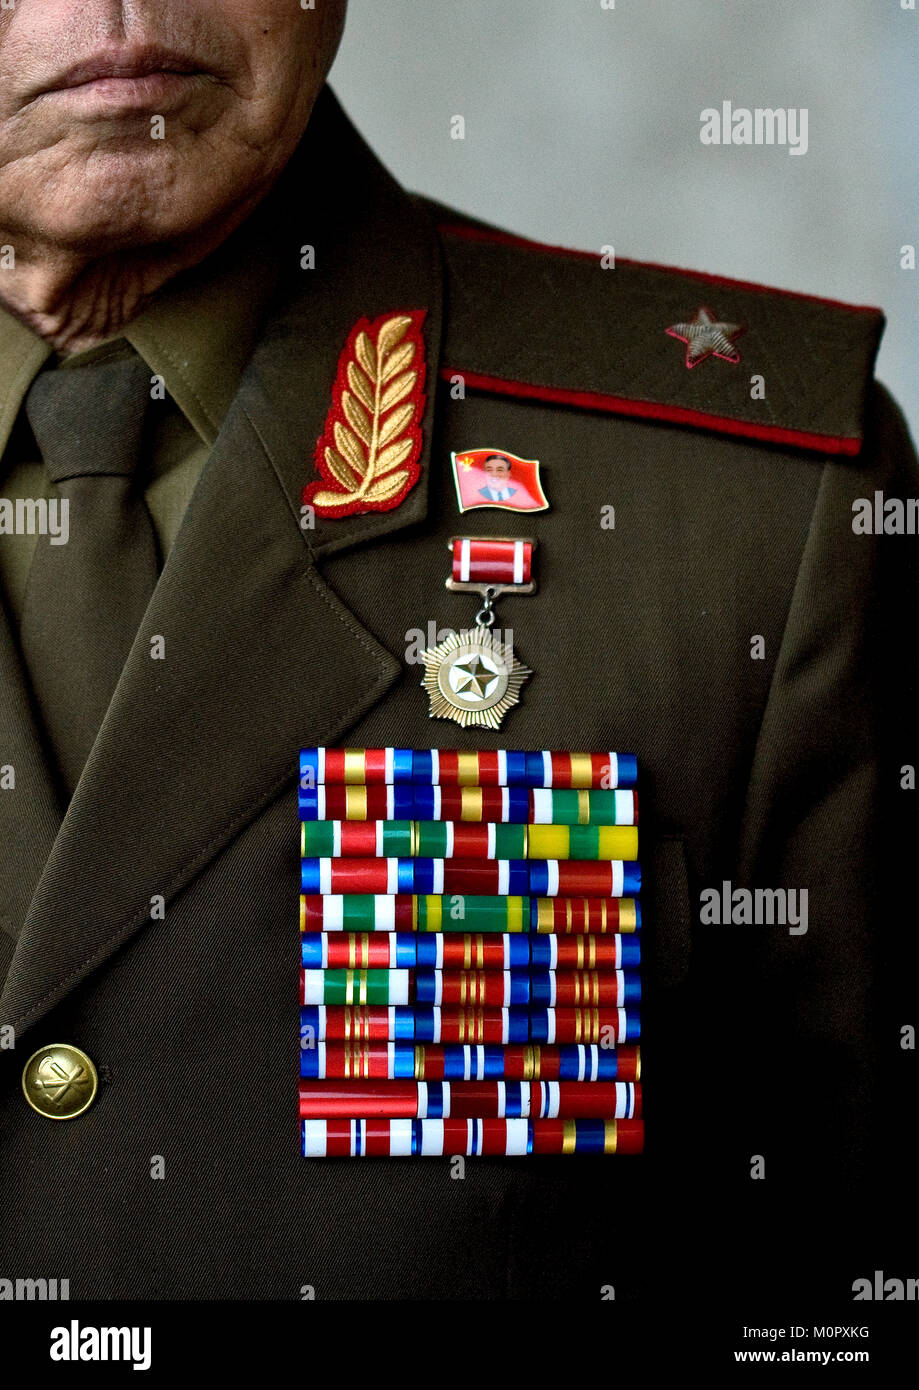 Por qué los generales norcoreanos tienen tantas medallas pese a que no han  luchado en ninguna guerra? - Quora